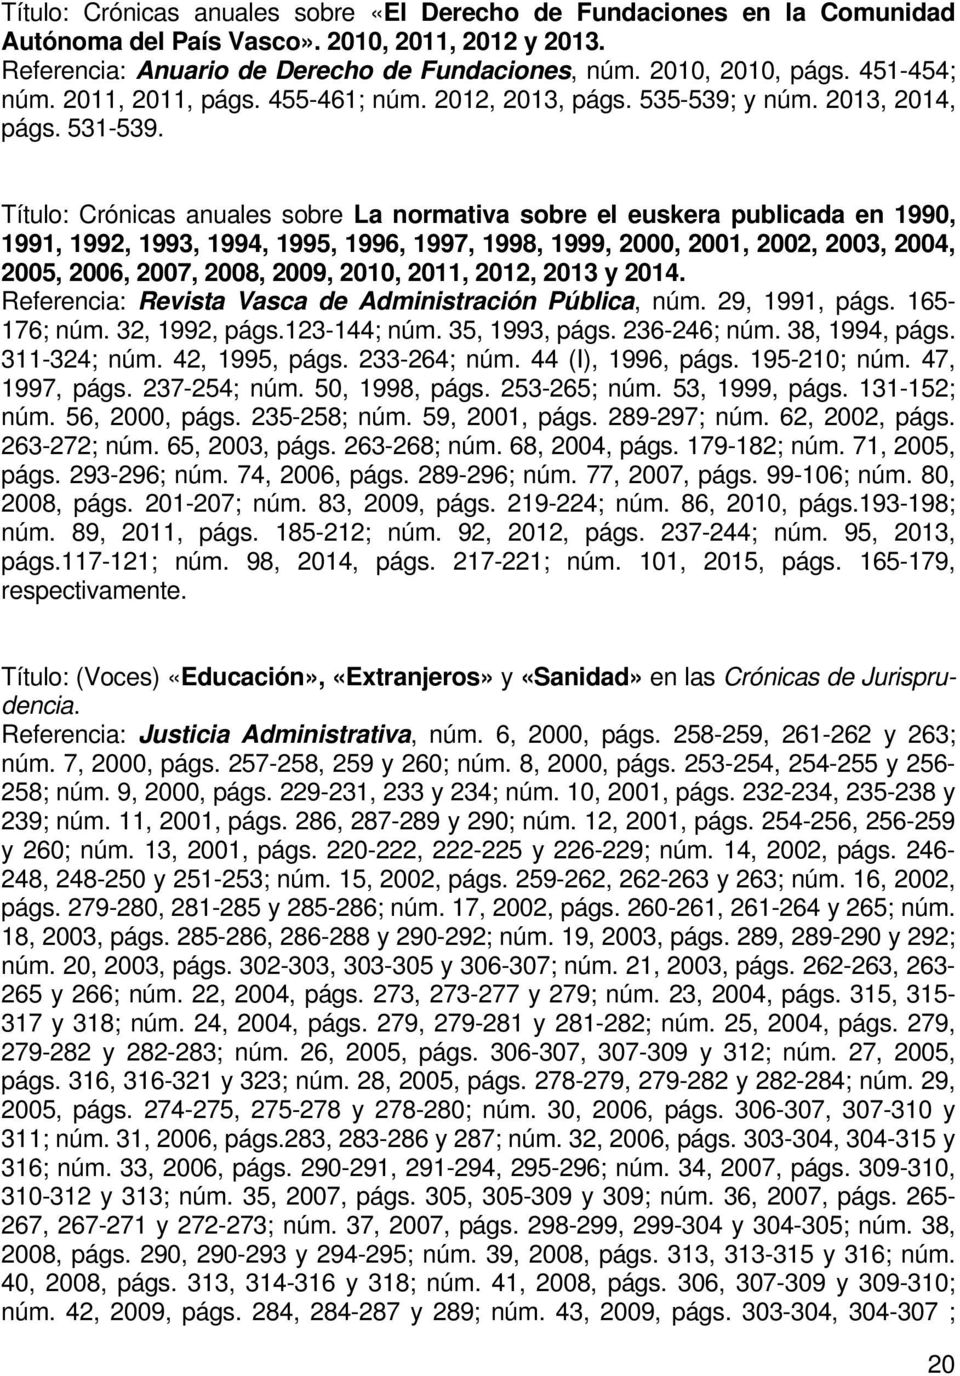 Título: Crónicas anuales sobre La normativa sobre el euskera publicada en 1990, 1991, 1992, 1993, 1994, 1995, 1996, 1997, 1998, 1999, 2000, 2001, 2002, 2003, 2004, 2005, 2006, 2007, 2008, 2009, 2010,